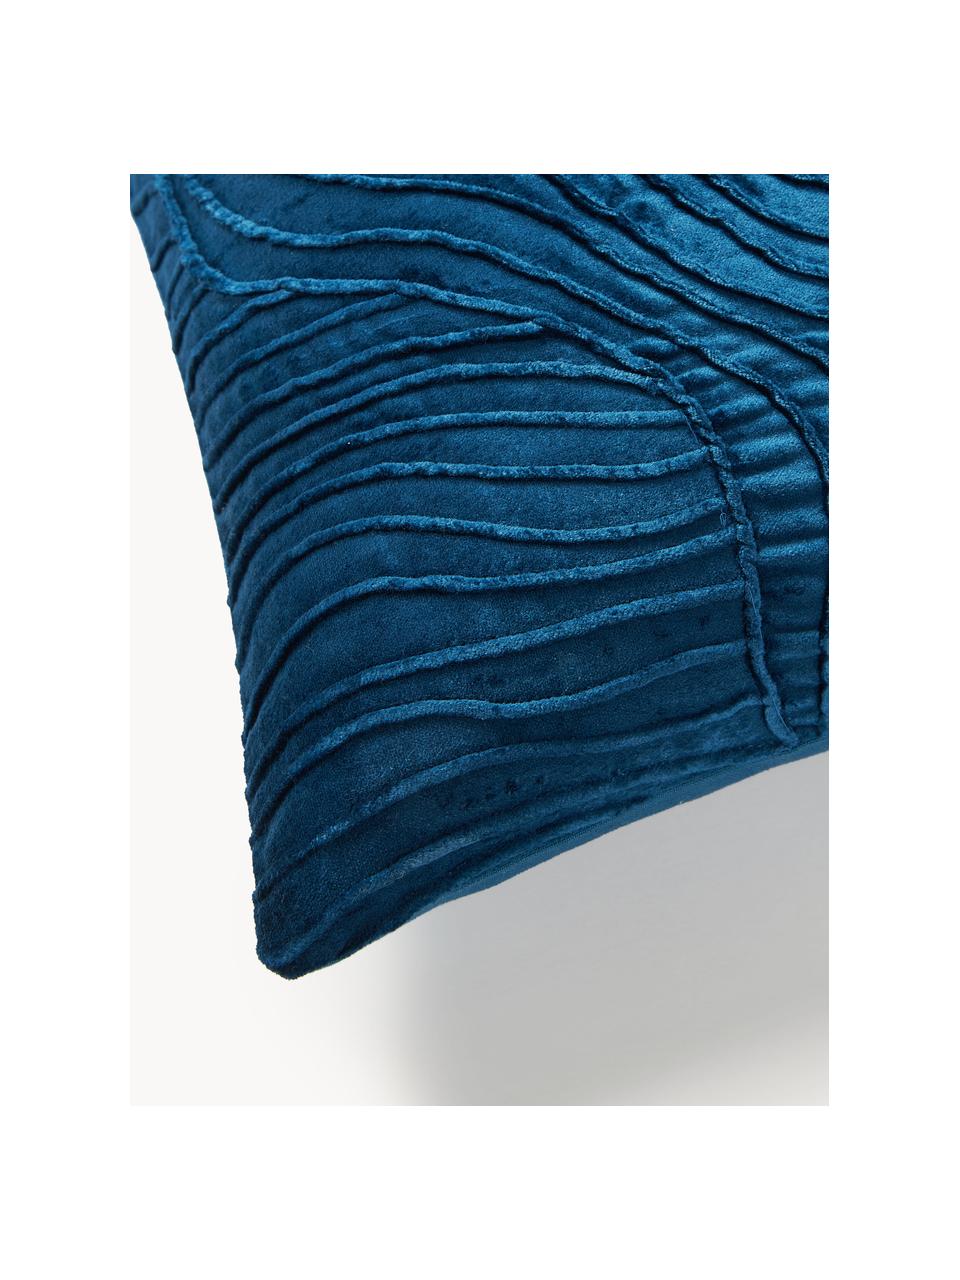 Fluwelen kussenhoes Nisha met structuurpatroon, Donkerblauw, B 50 x L 50 cm